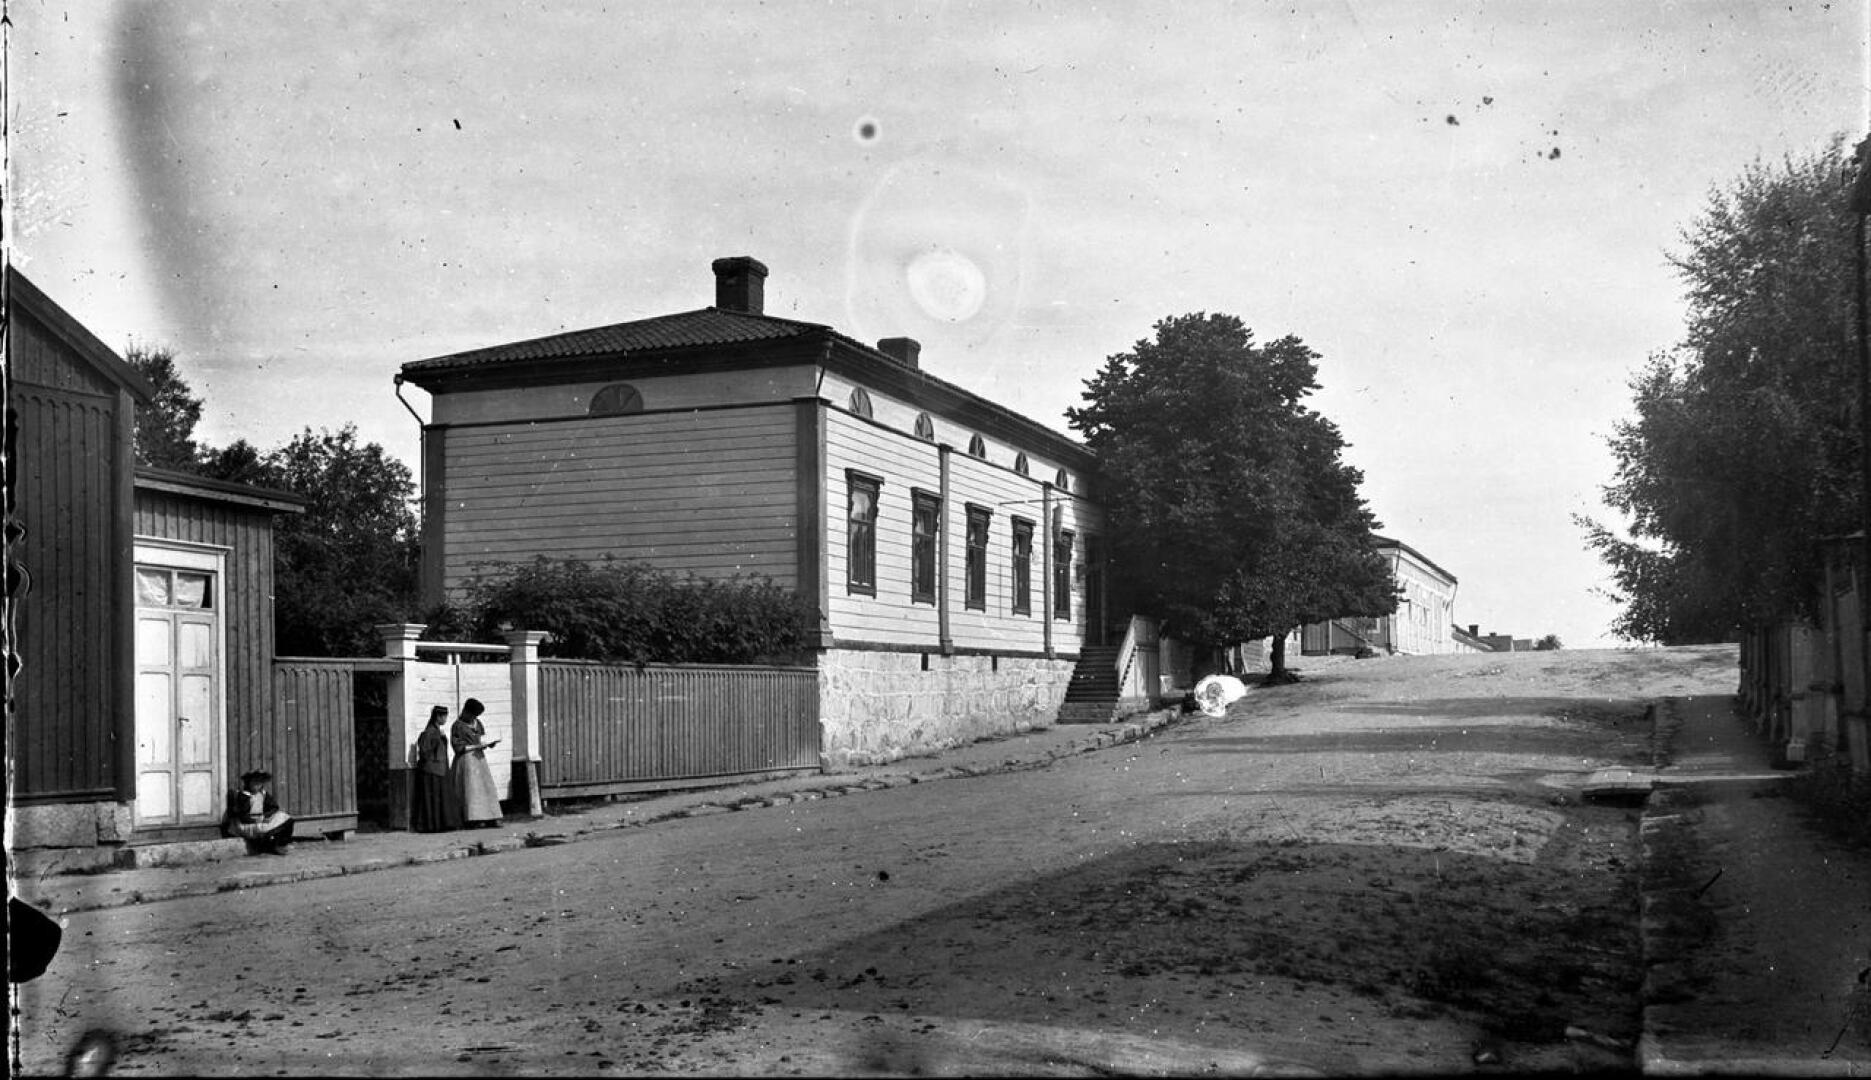 Kuva  vuodelta 1900, jolloin suutari asui ns. Irjalan talossa. Talon ulkopuolella näkyy myös saapas mikä kertoo että talossa on suutari. Kuvan on ottanut Aage Andreasen. 